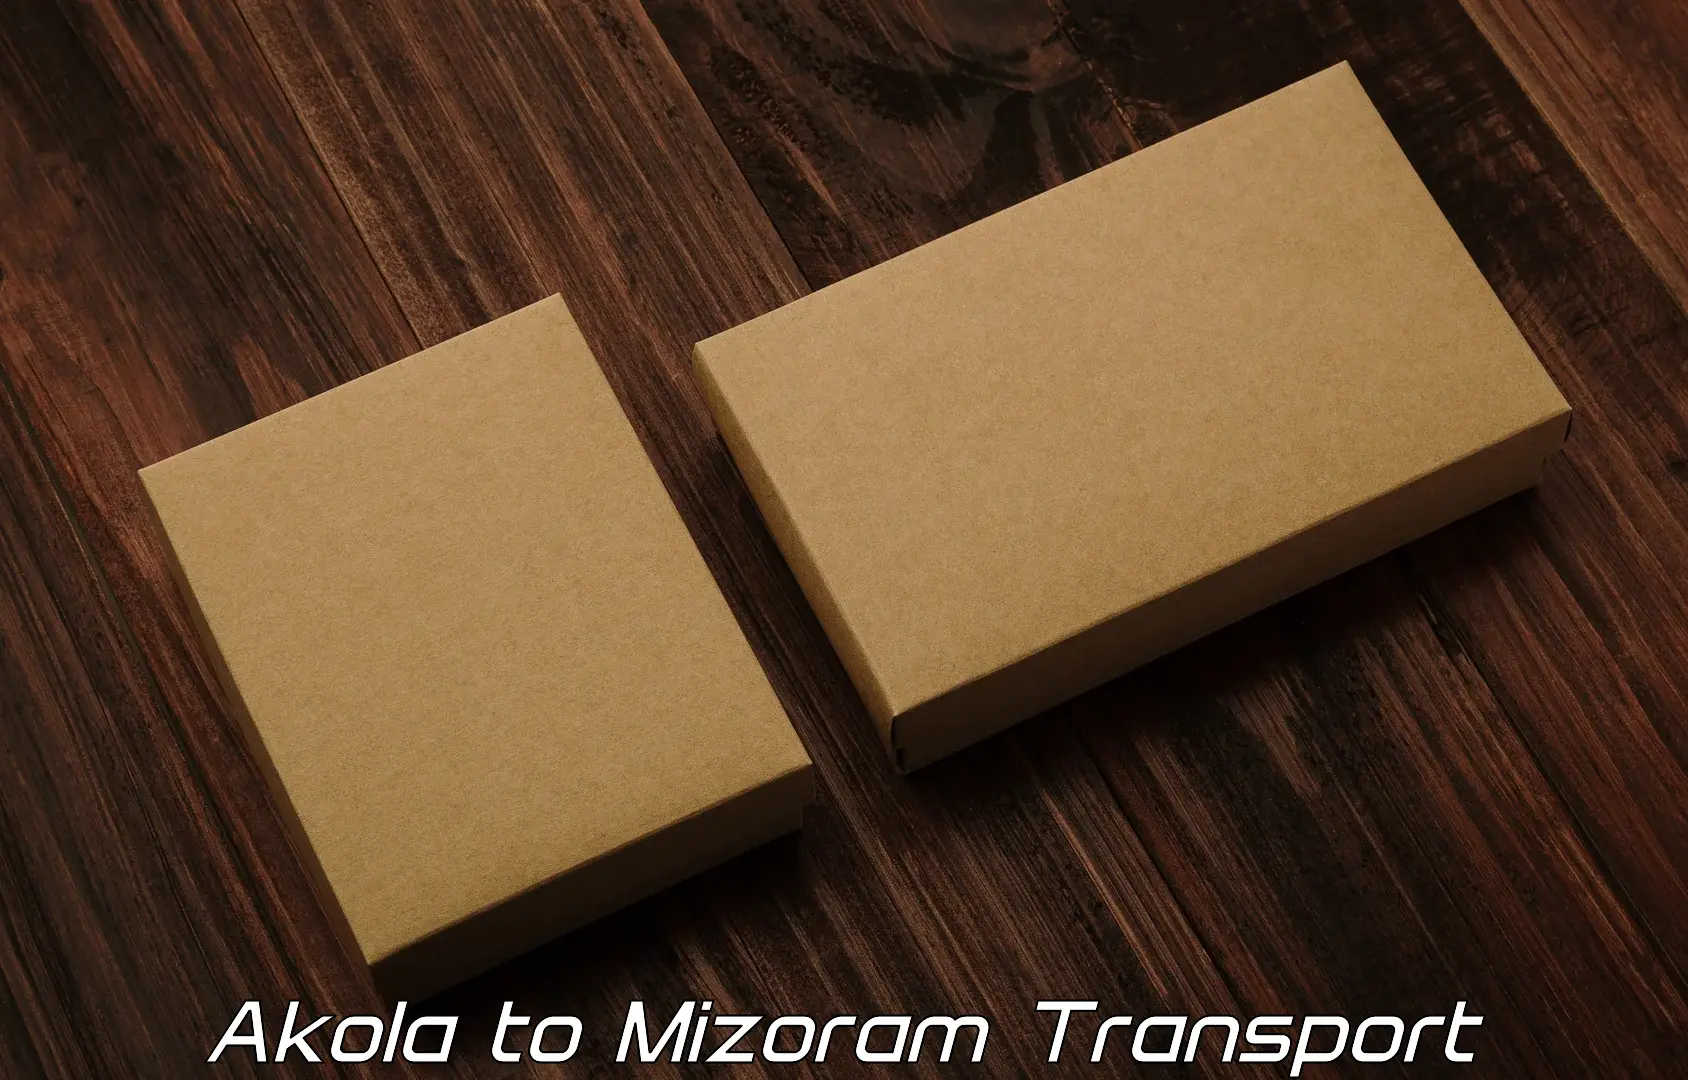 Transport in sharing Akola to Mizoram